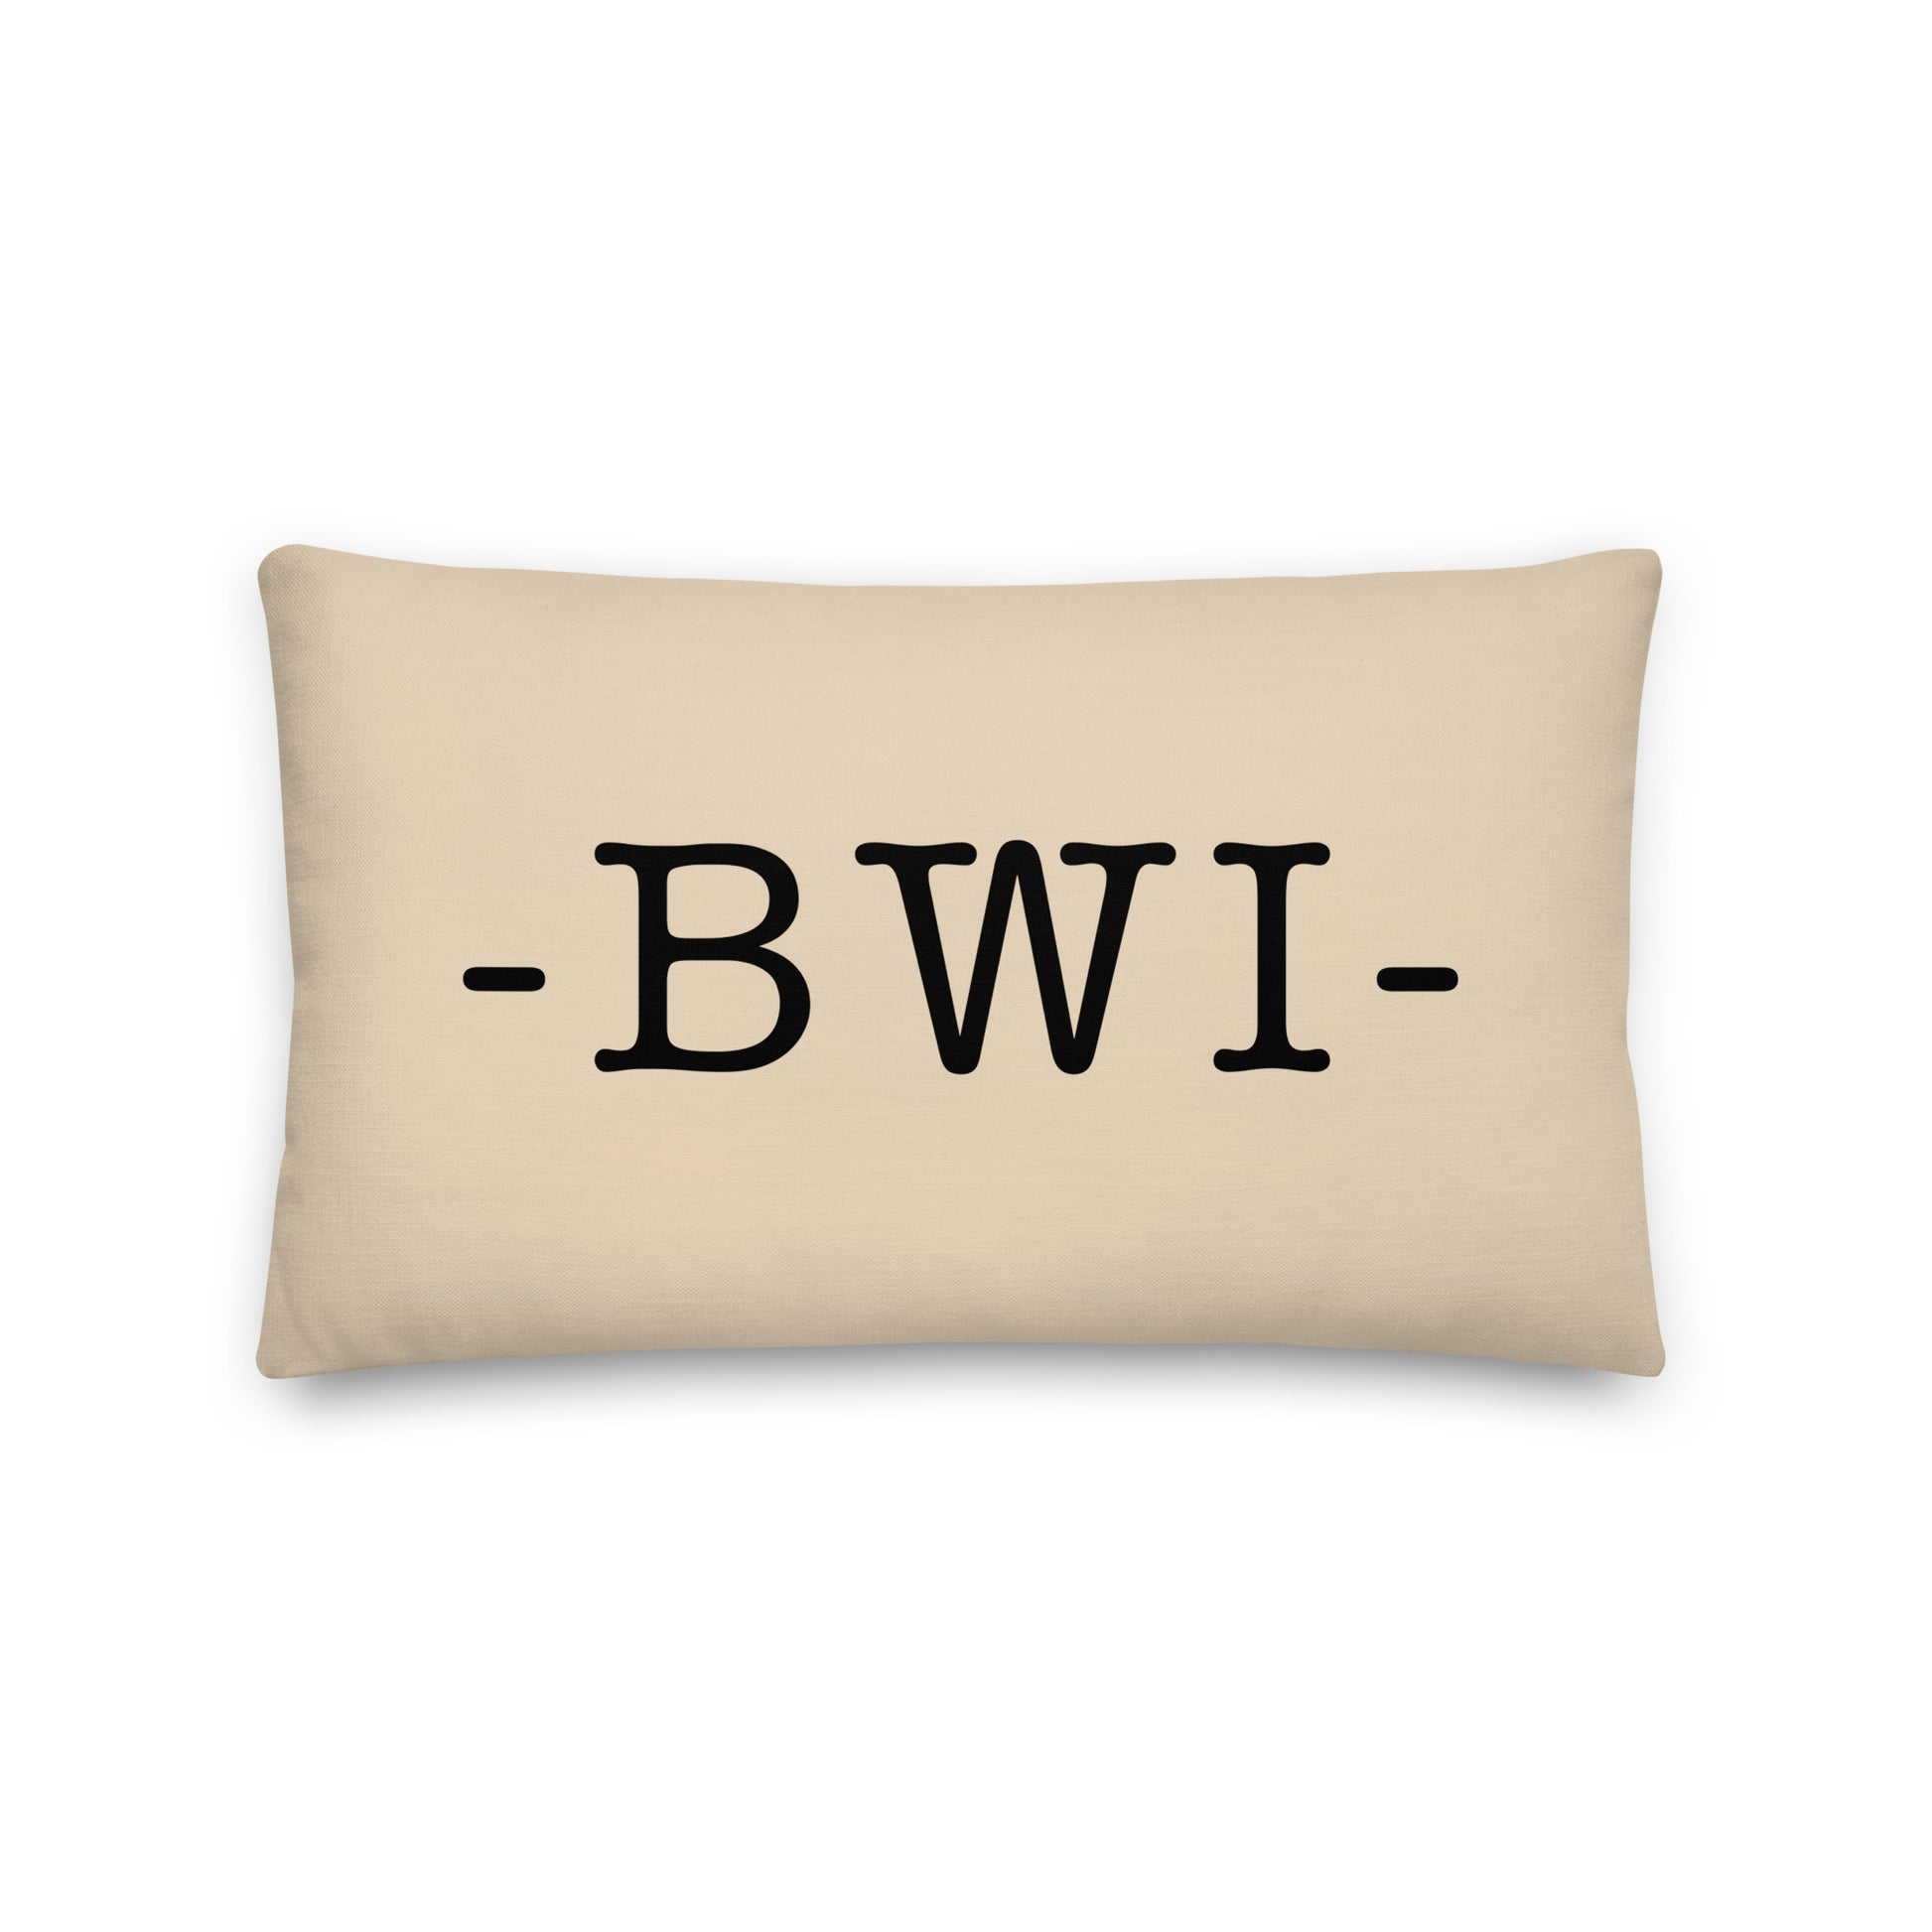 Farmhouse Throw Pillow - Buffalo Plaid • BWI Baltimore • YHM Designs - Image 01